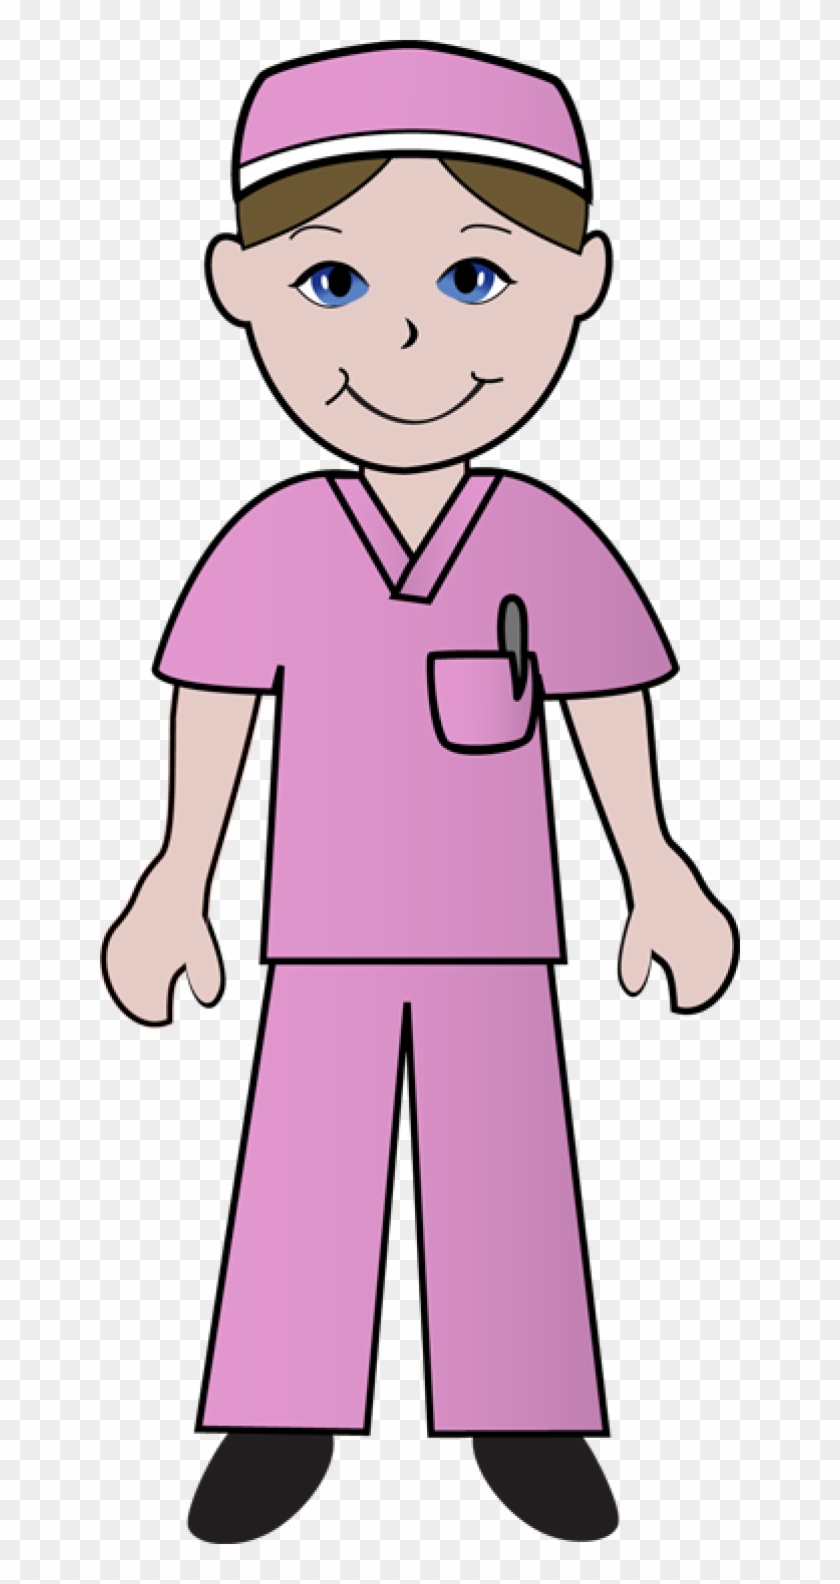 Cartoon Nurse Clipart - Nurse Clip Art #3370